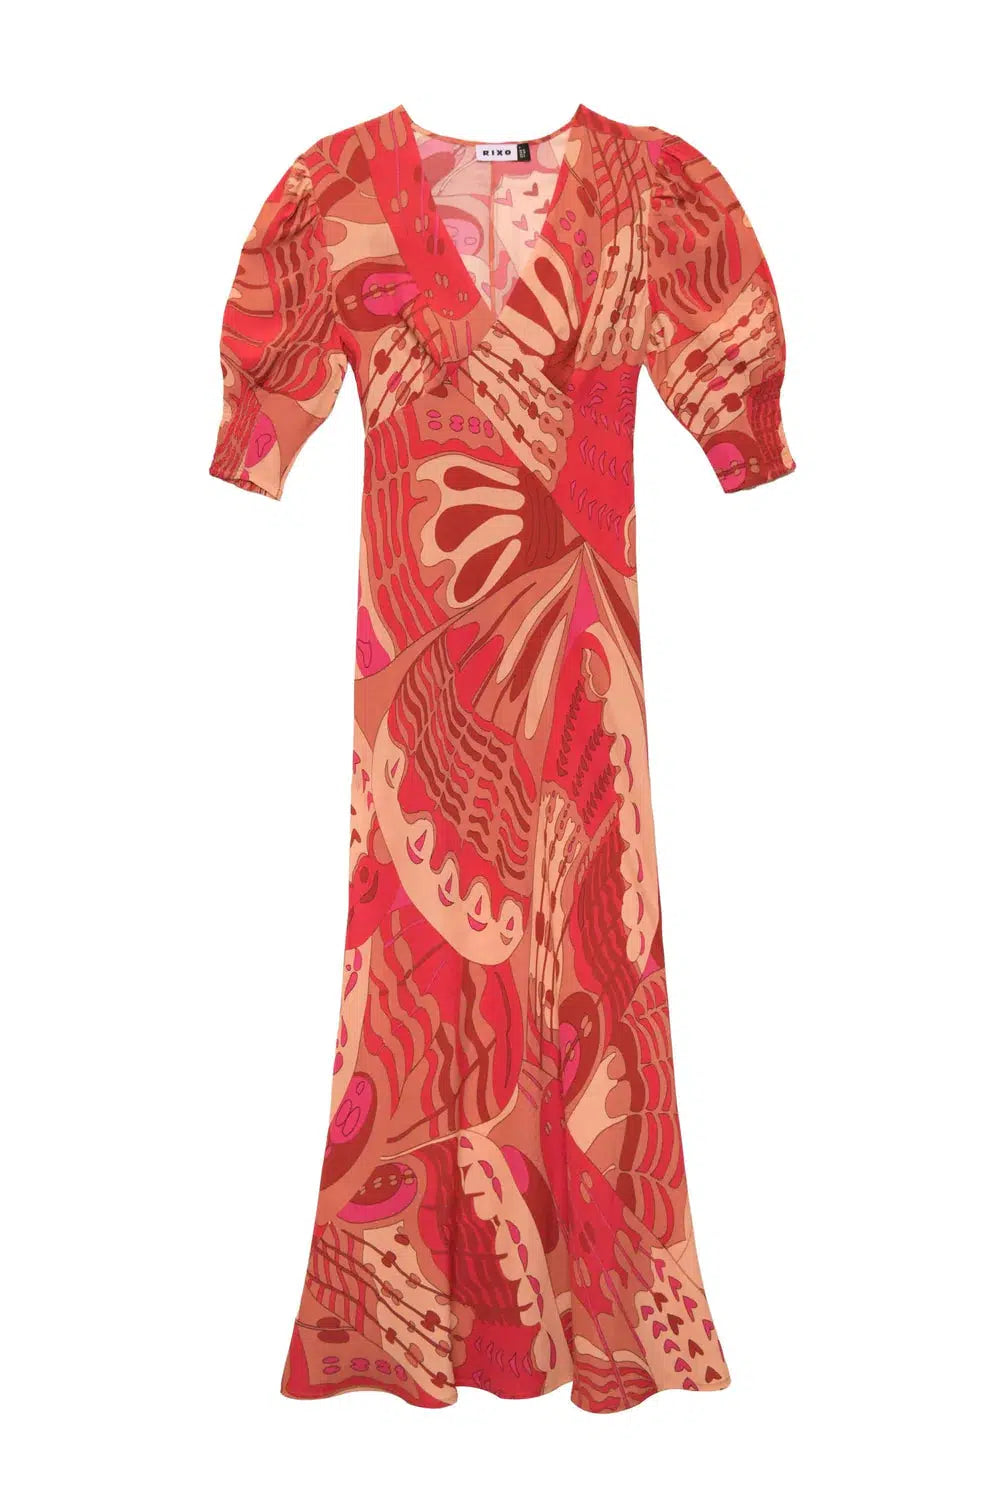 Zadie Dress Butterfly Red-Dress-Rixo-Debs Boutique